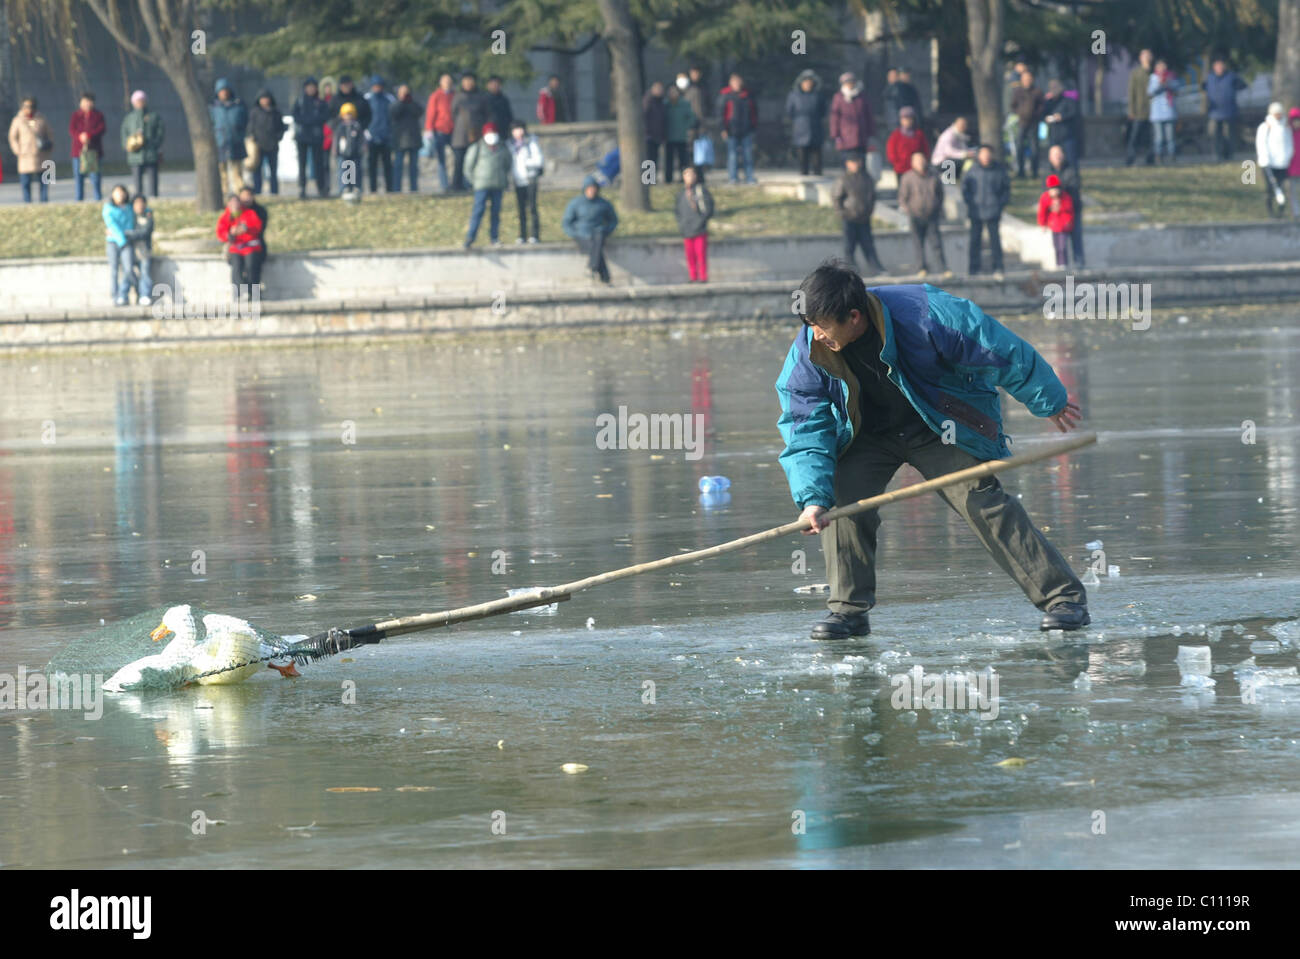 Pato rescatado del lago congelado Park trabajadores mastermind el rescate de pato afectadas de un lago congelado en Beijing, China. El Foto de stock